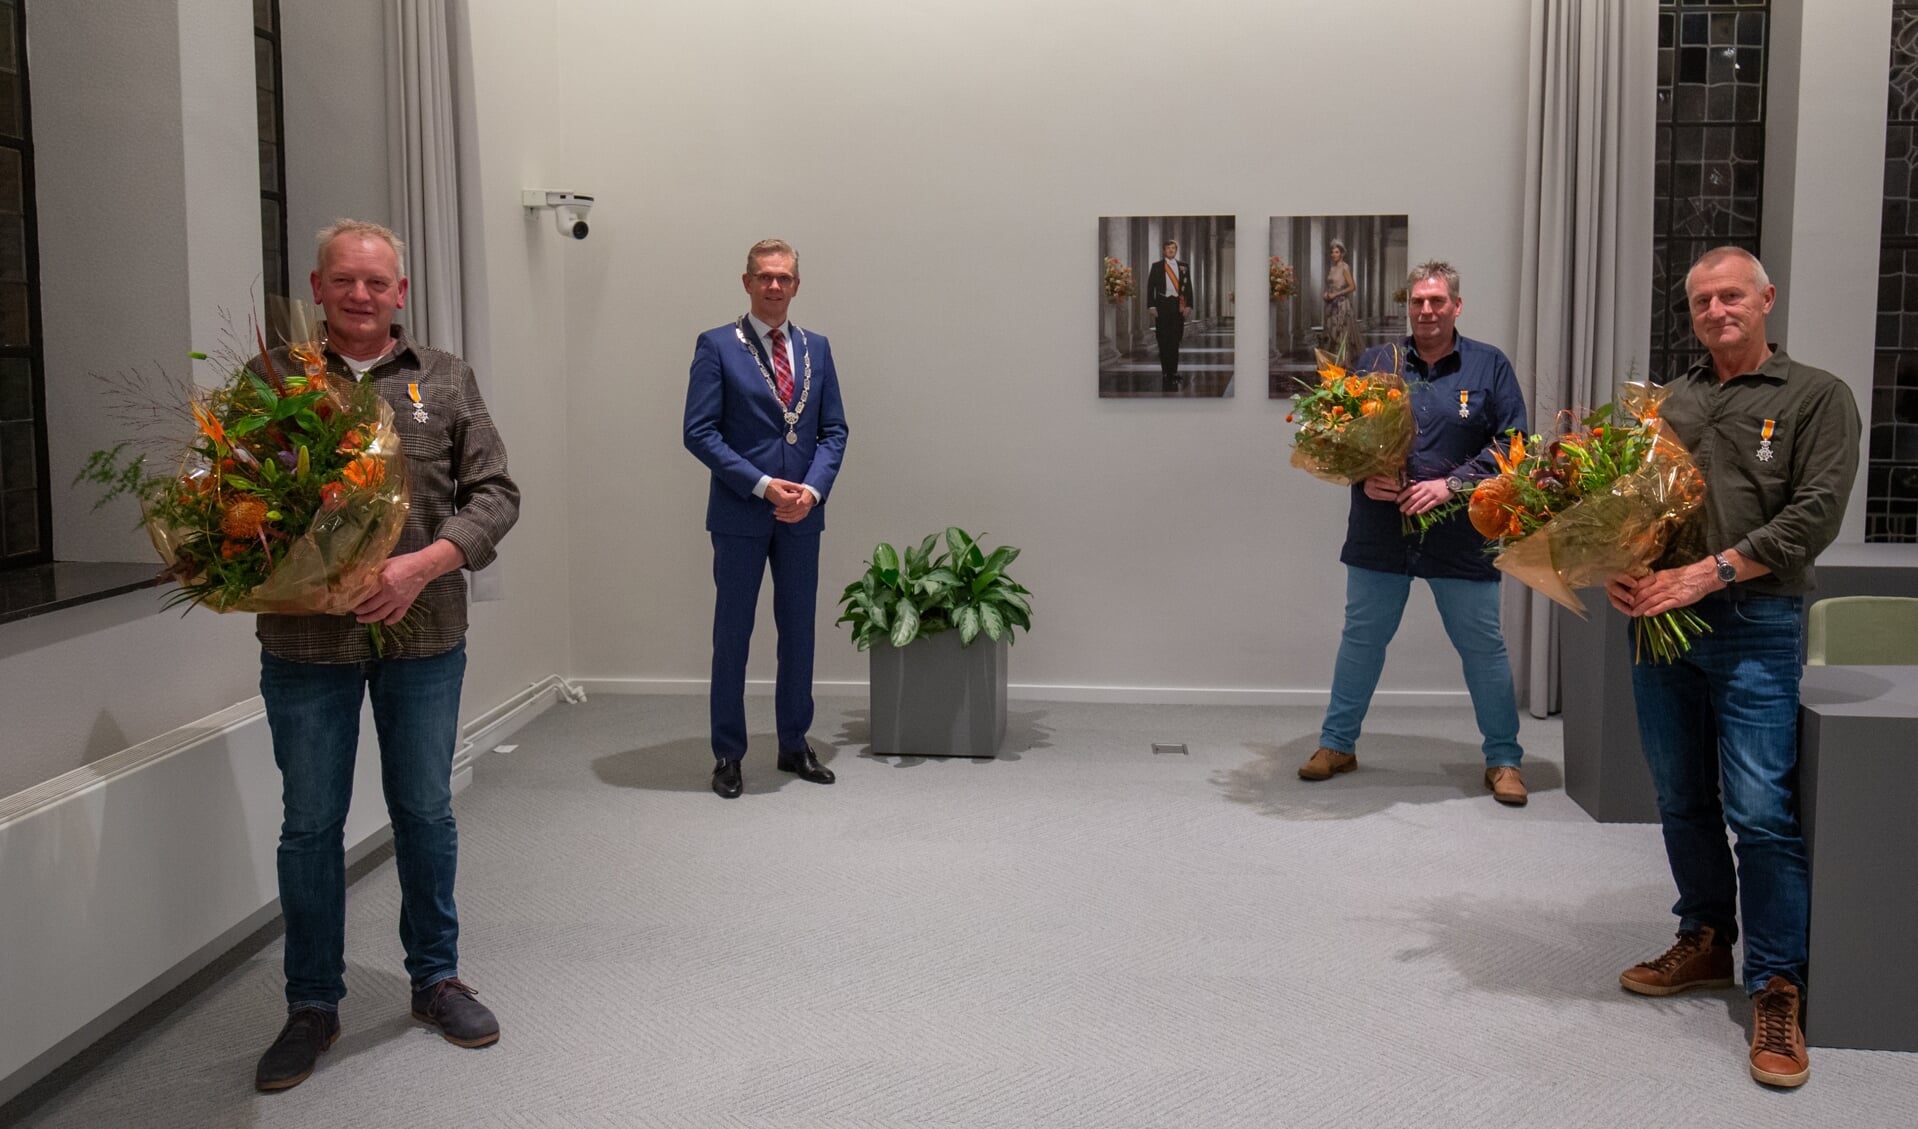 Met bloemen v.l.n.r. Doede Robbie Smith, Anne de Meer en Jochum Hilbrand Veenje. Linksachter staat burgemeester Jeroen Gebben. 